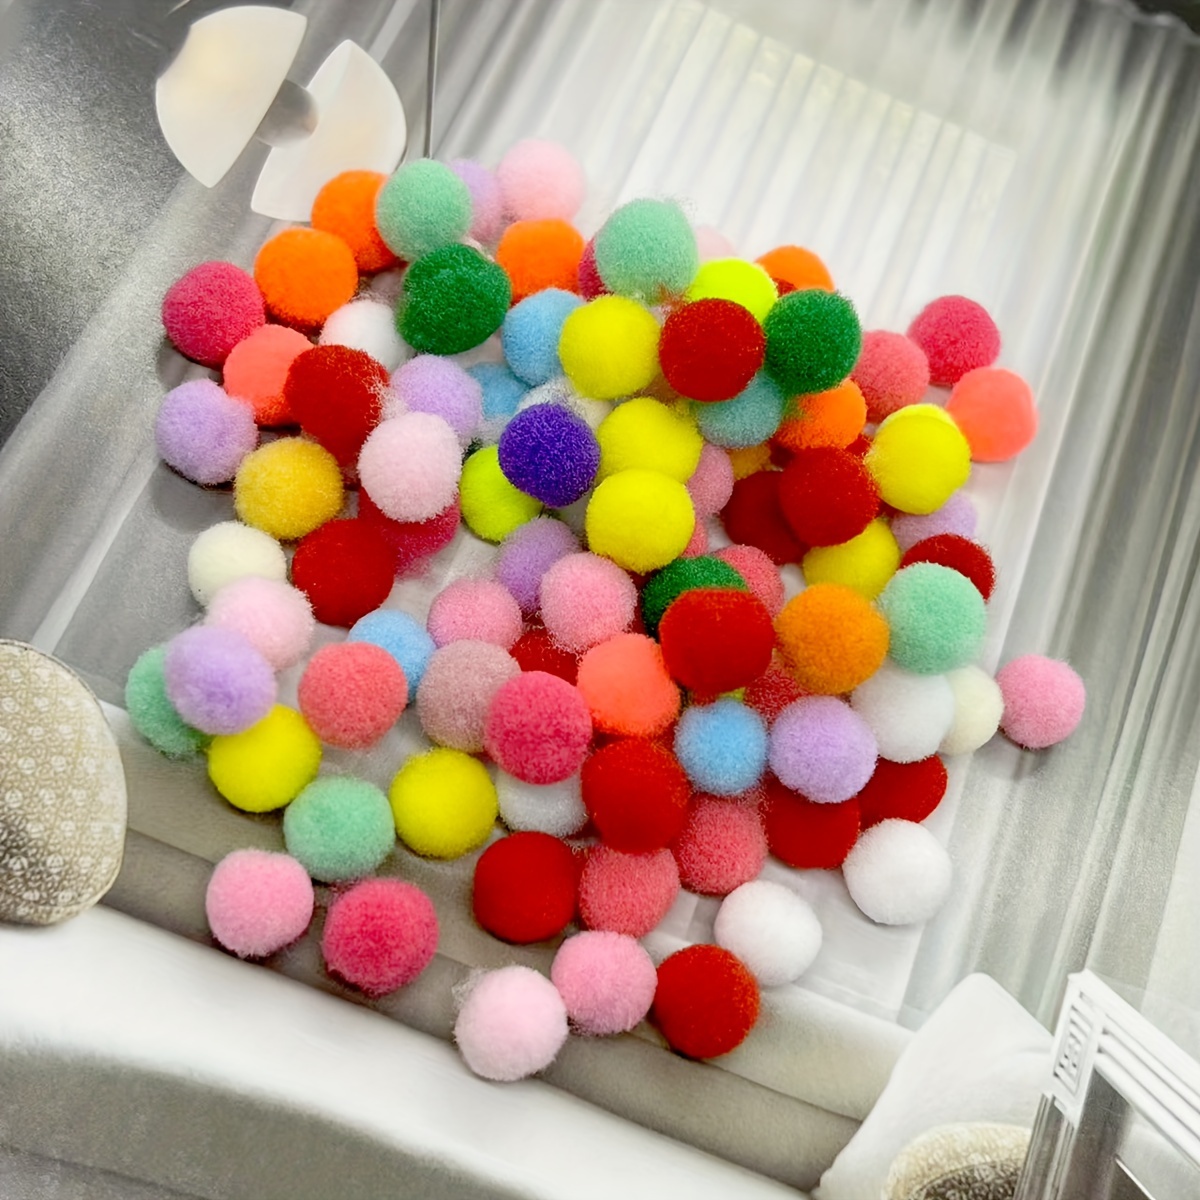 Colorful pompoms, Arts Interactive Funny Cat Balls Craft Making Soft Puff  Balls Dia 2.5cm 70Pcs 